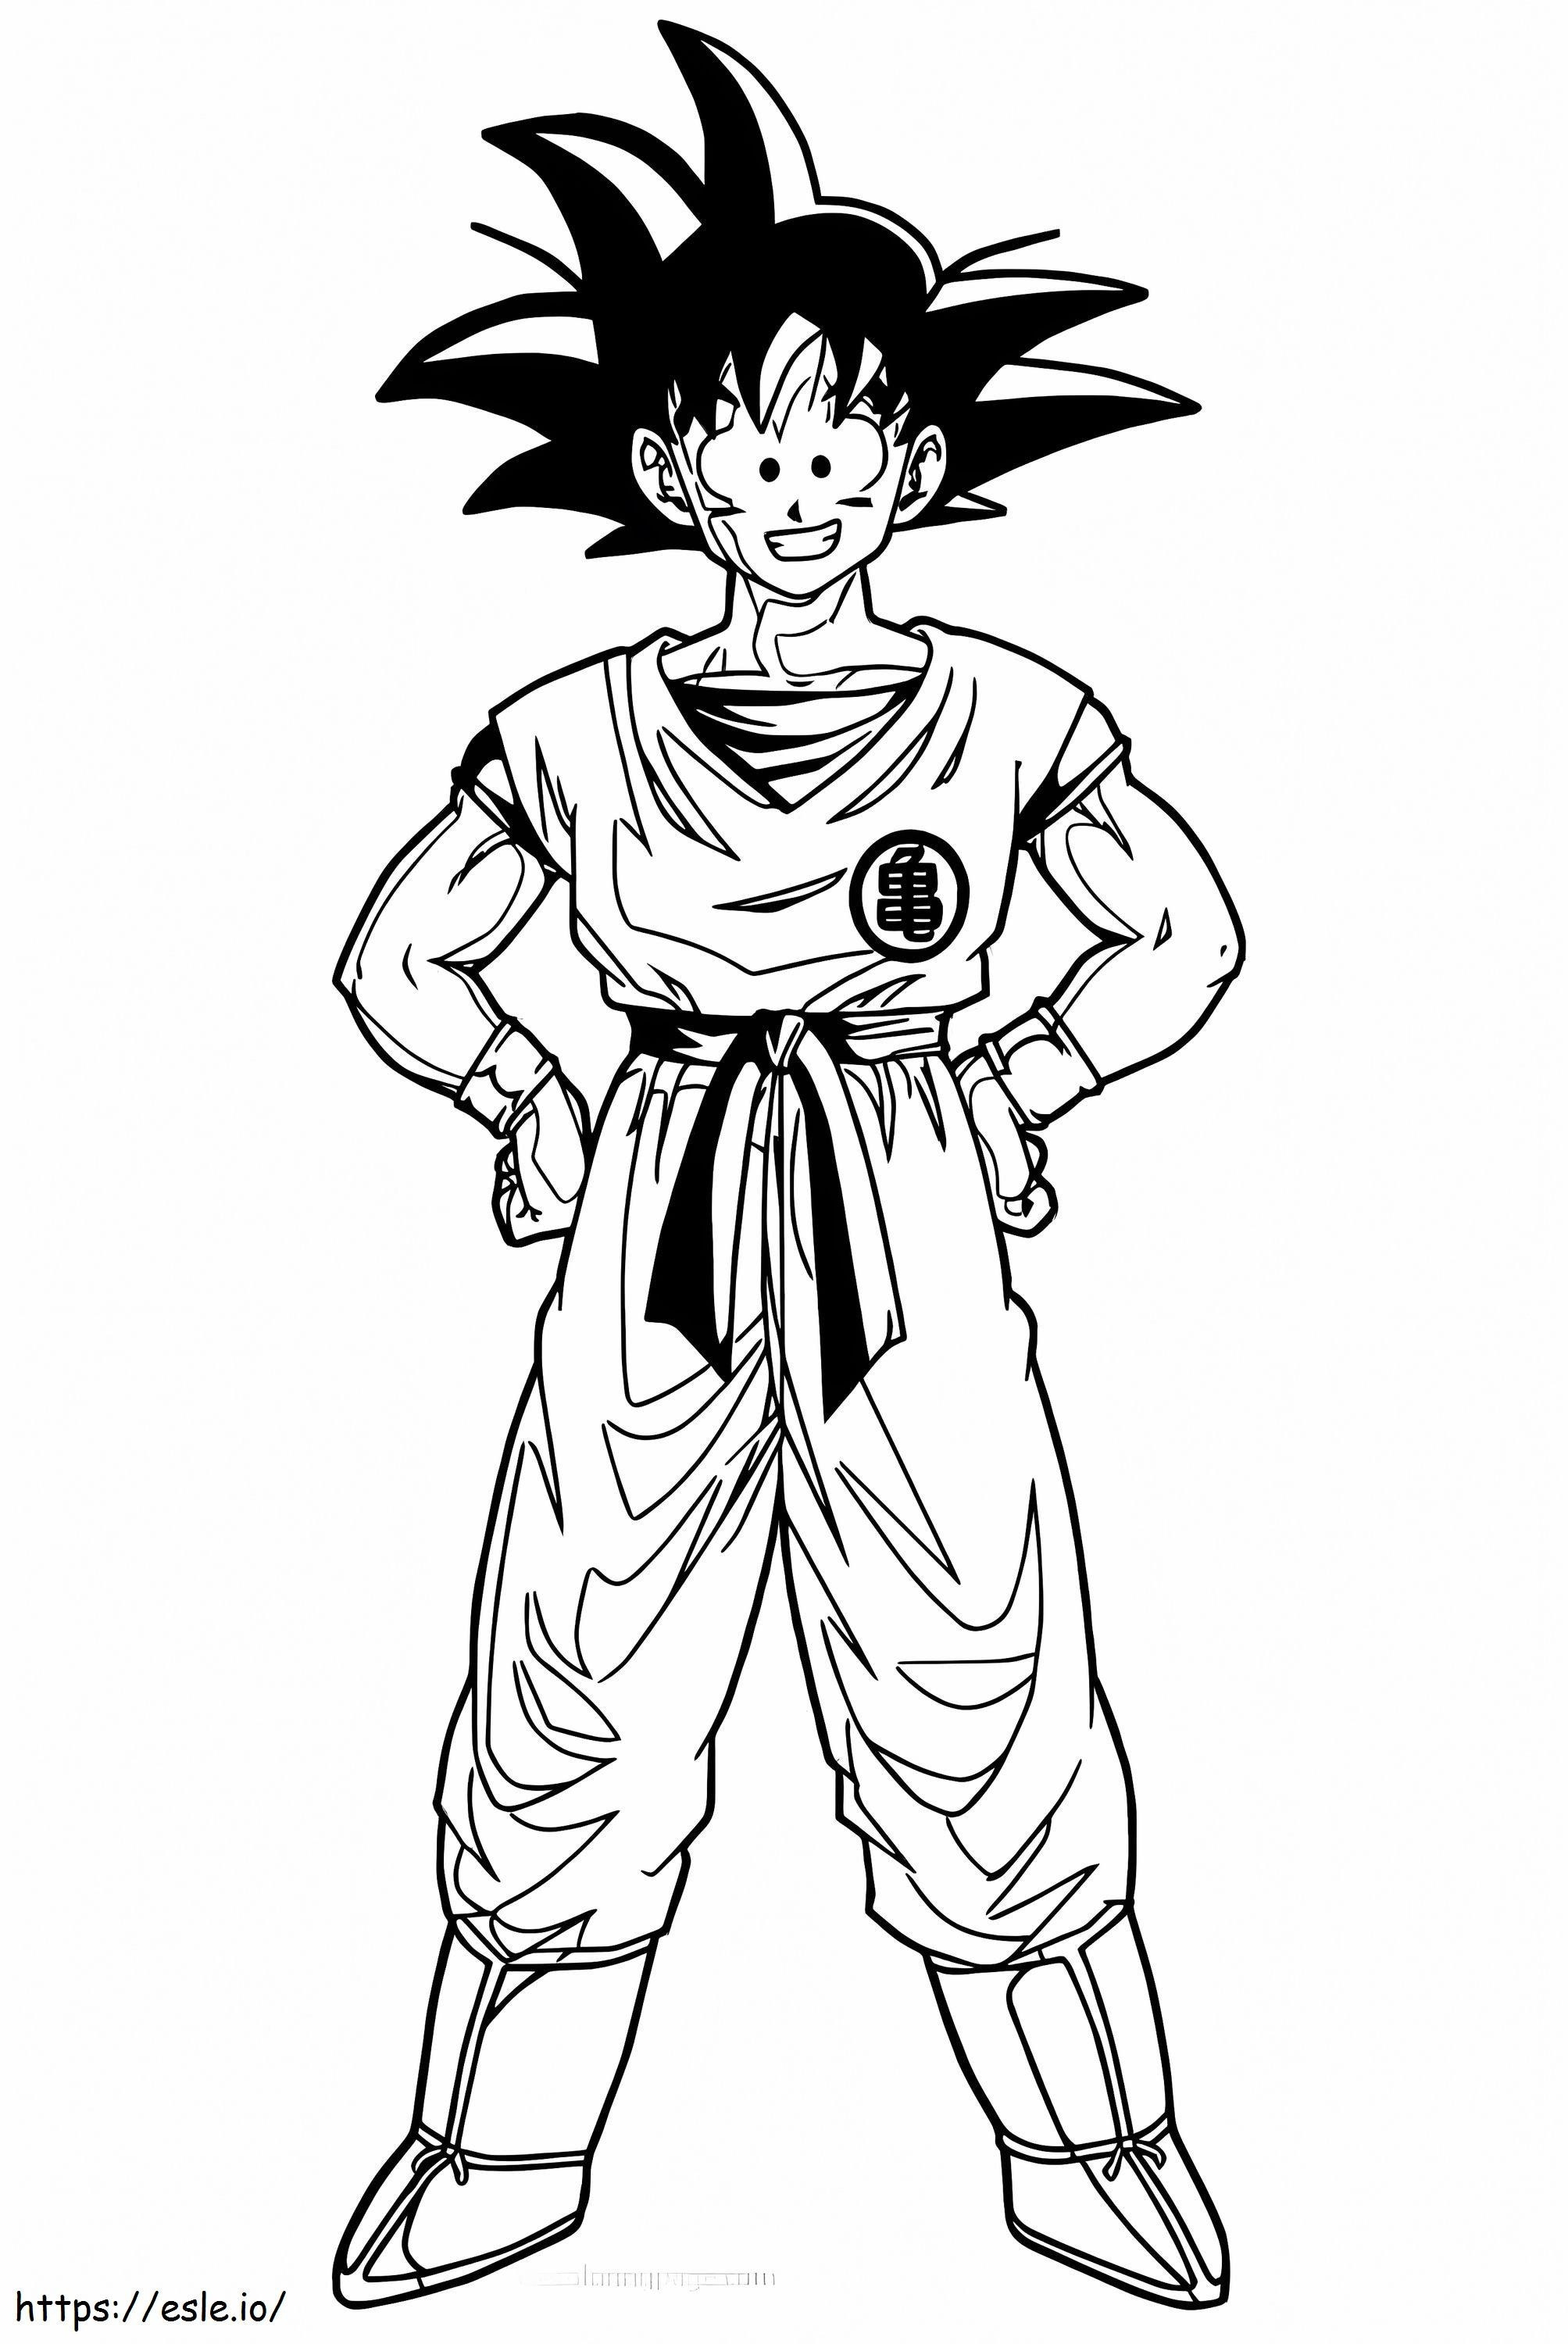 Fun Goku coloring page